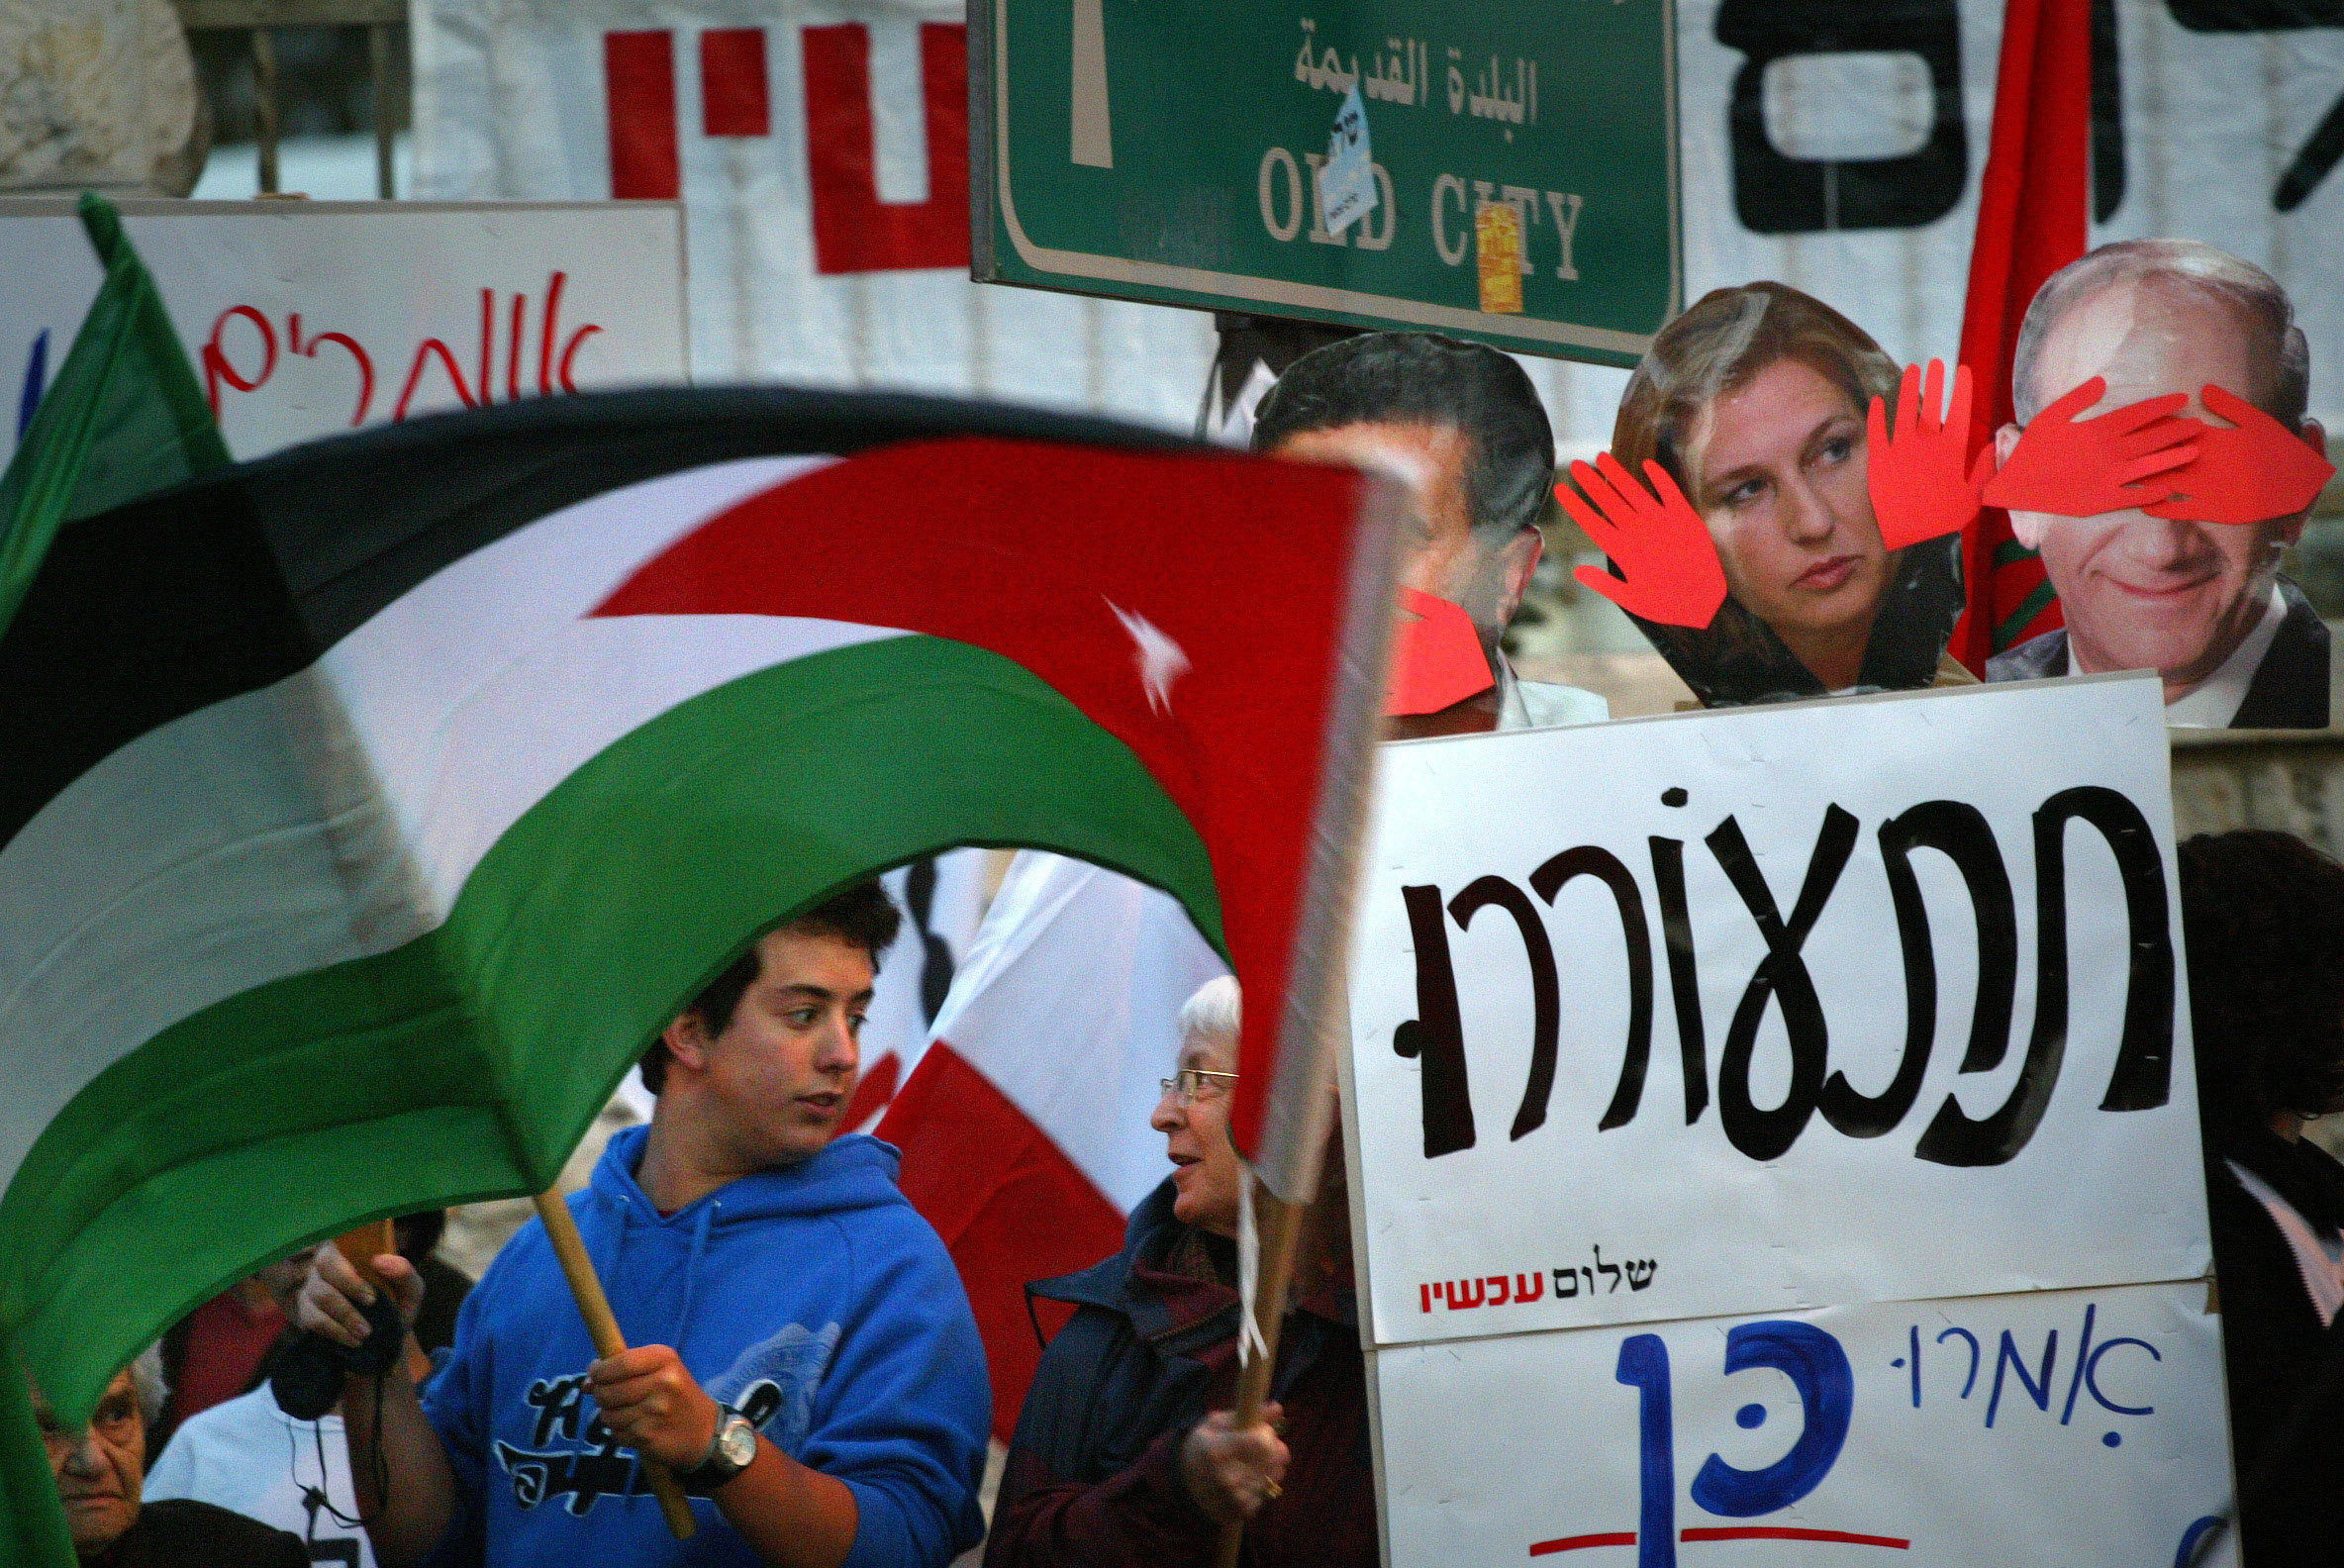 הצלחת הכיבוש היא גם כישלון הכוחות שהתנגדו לו. הפגנה של "שלום עכשיו" ליד מעונו של אהוד אולמרט ב-2007 (צילום: מיכל פתאל / פלאש 90)